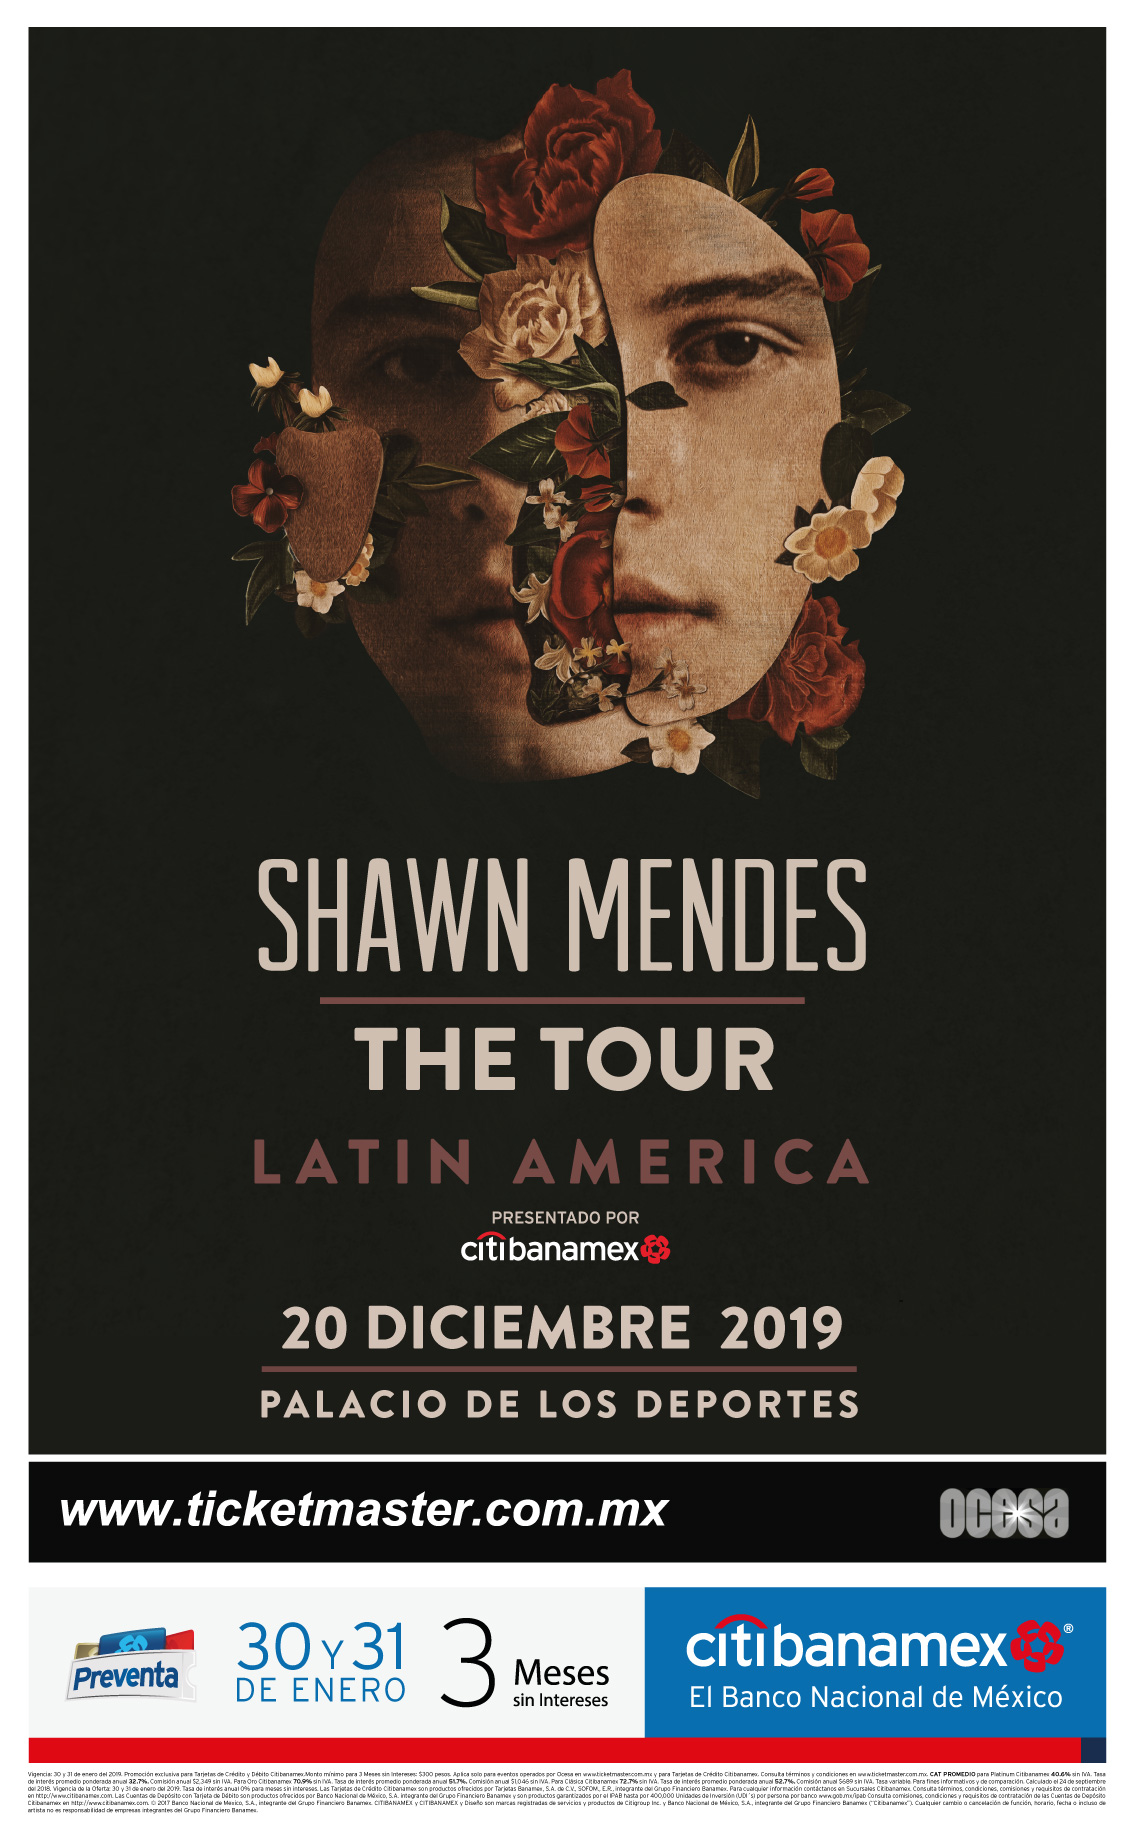 ¡Shawn Mendes volverá a México para un concierto en el Palacio de los Deportes!